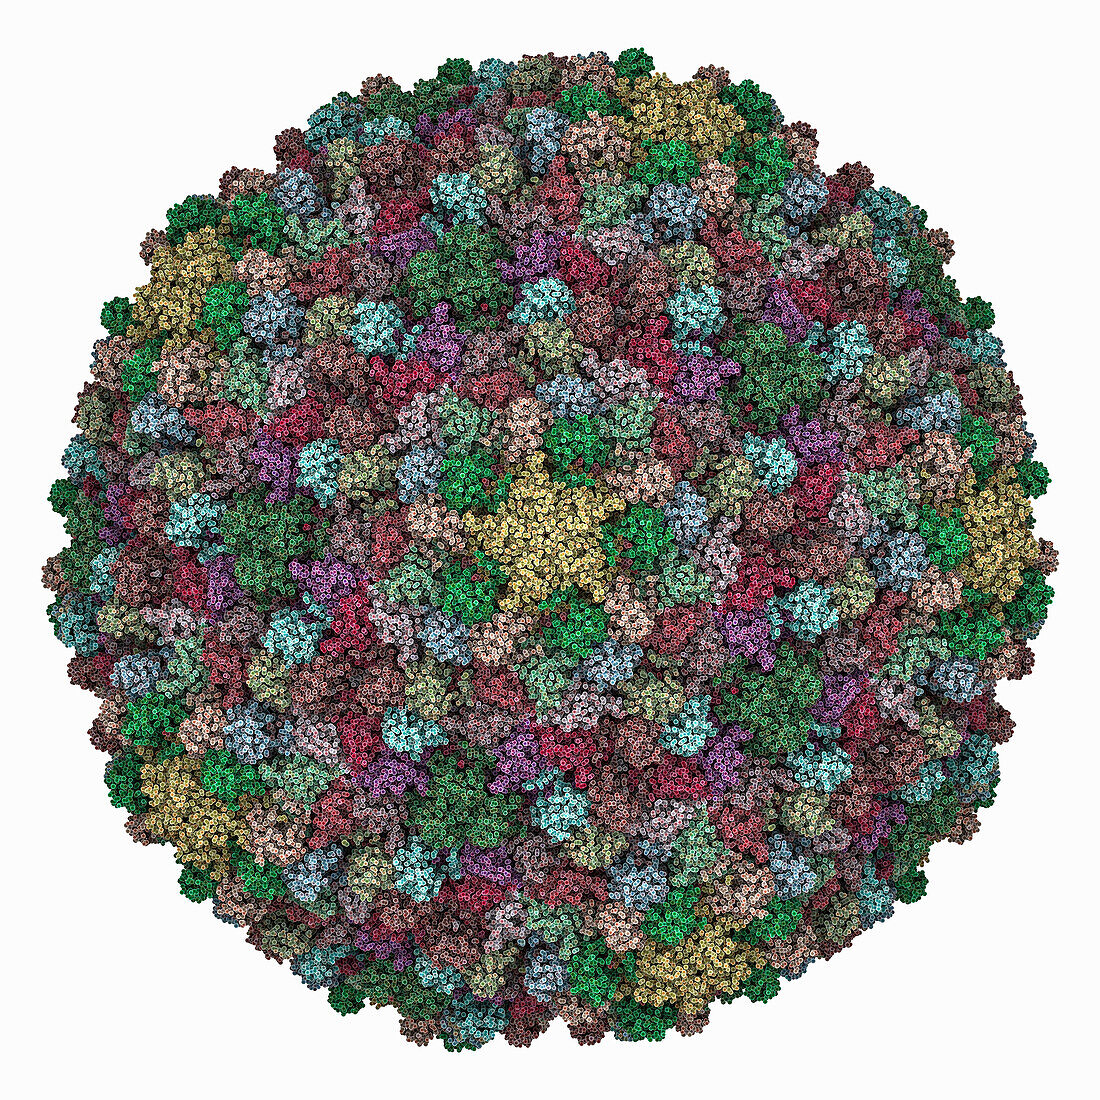 Myoviridae phage XM1 capsid, molecular model